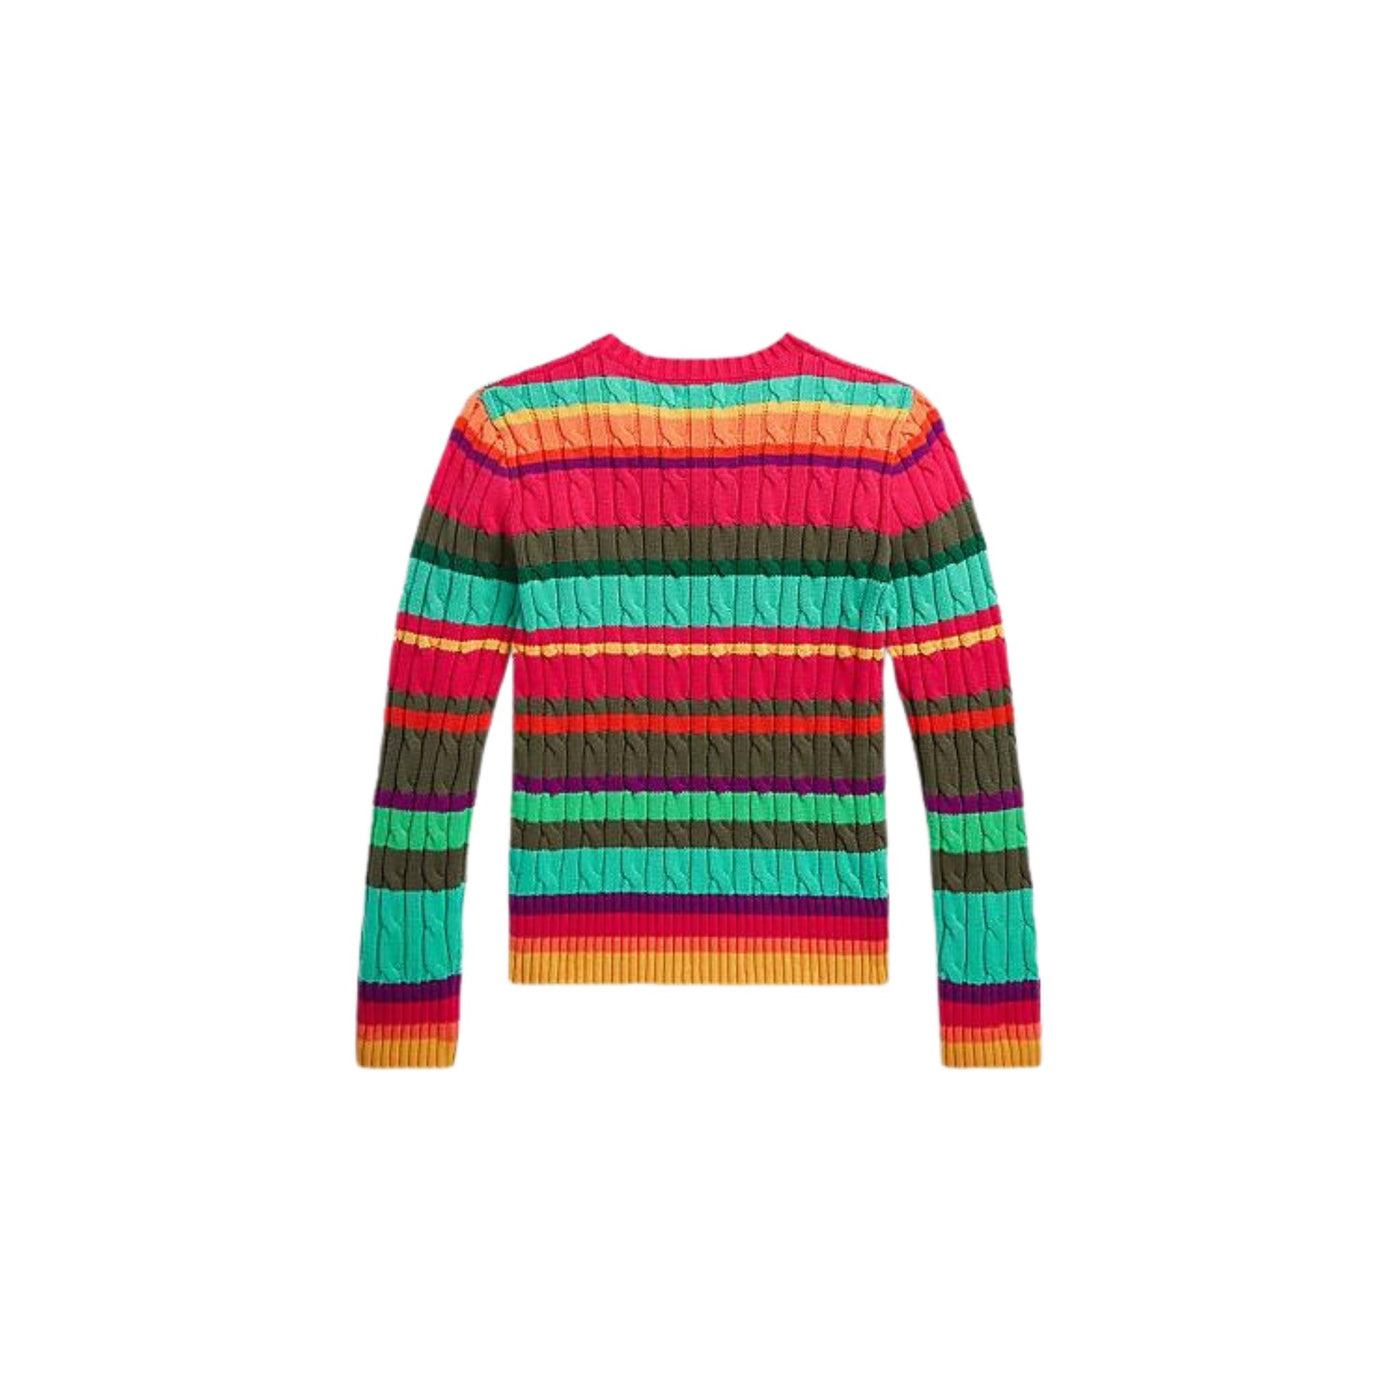 Maglione da bambina multicolore firmato Polo ralph lauren vista retro